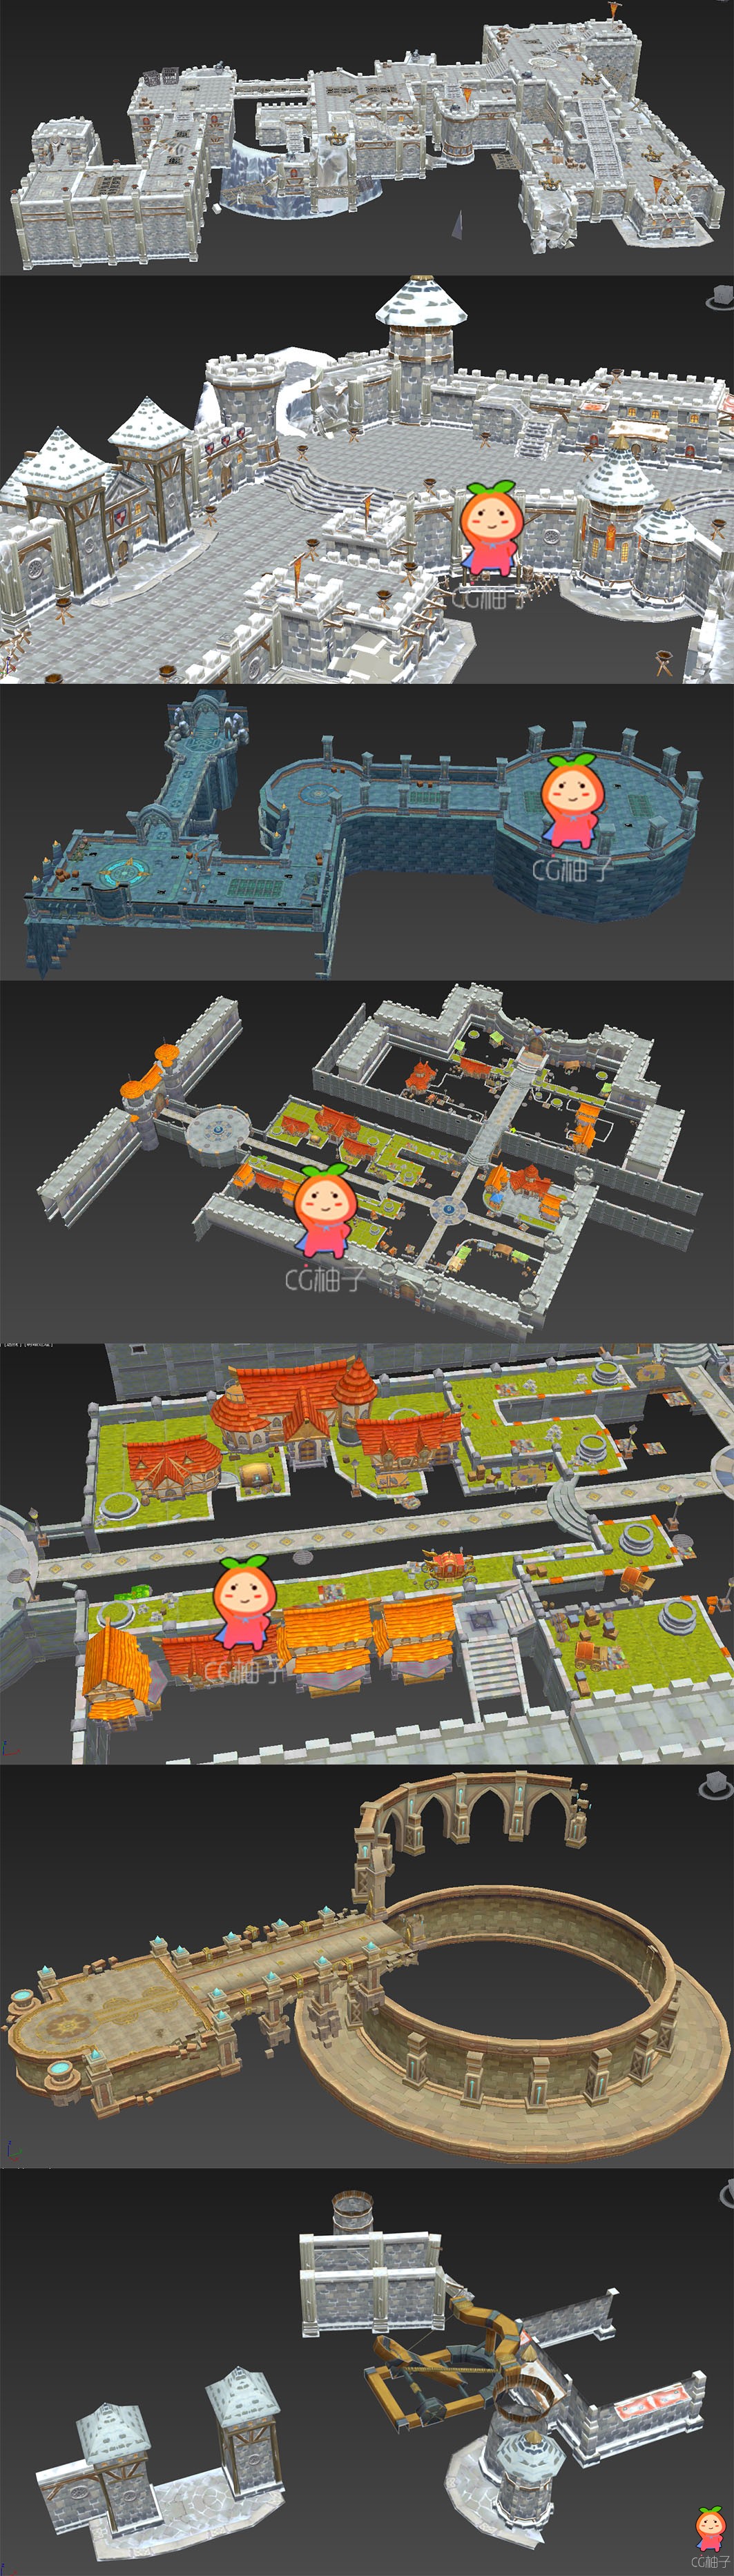 《幻想编年史》游戏场景3D模型 手游美术素材 3D场景模型